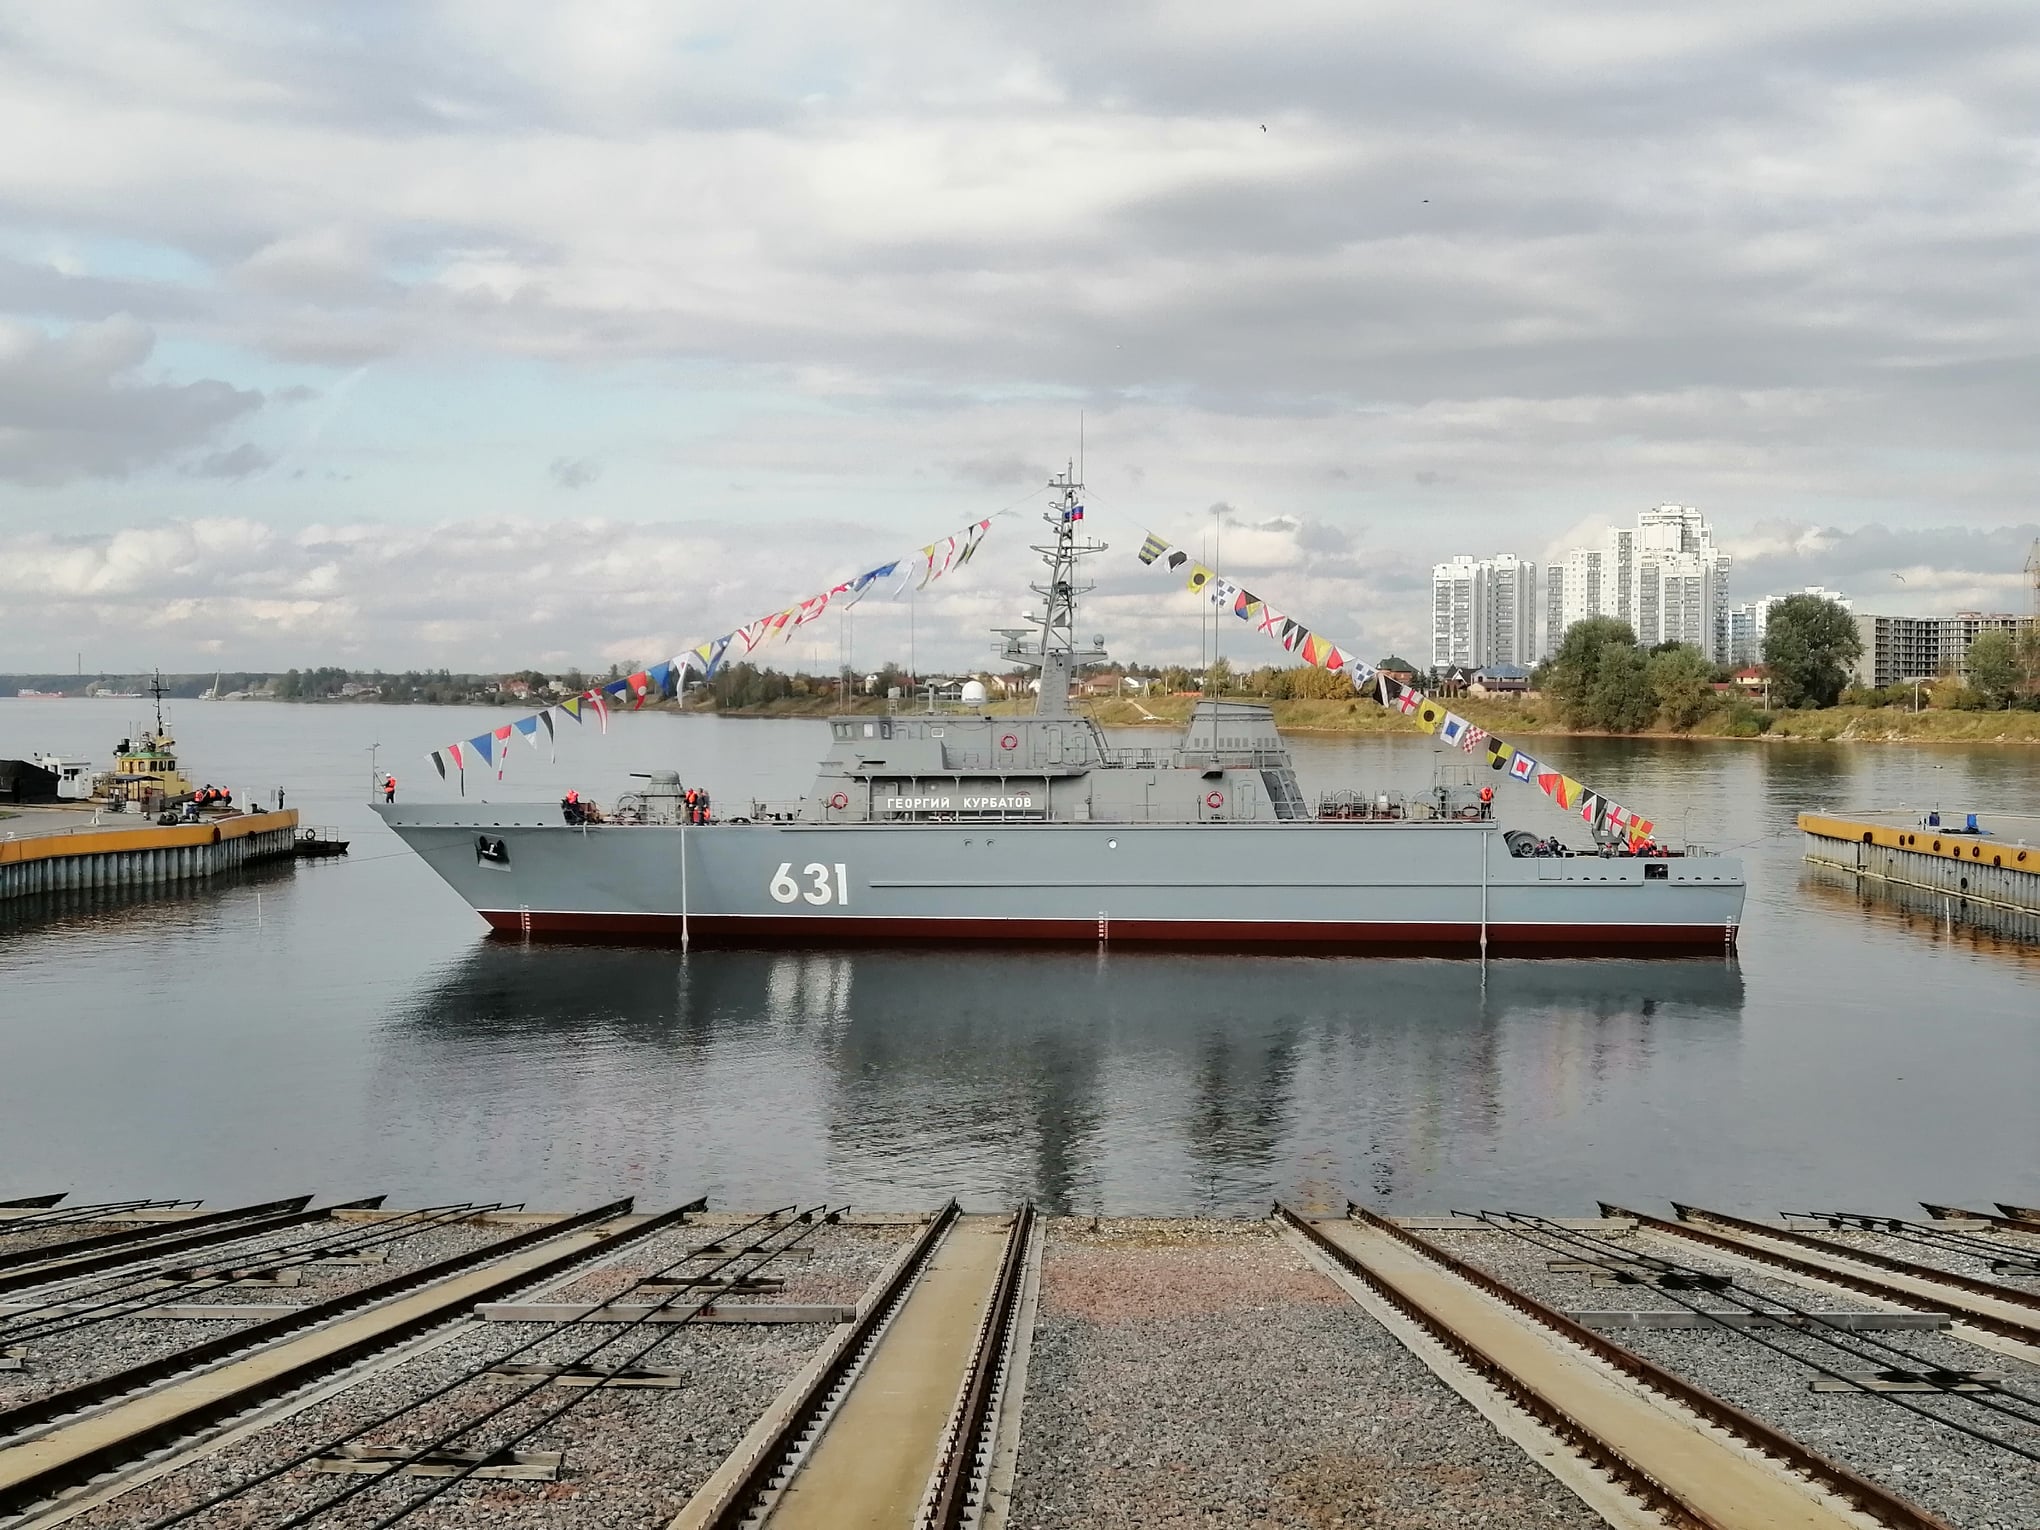 В Севастополь прибыл новый корабль противоминной обороны «Георгий Курбатов»